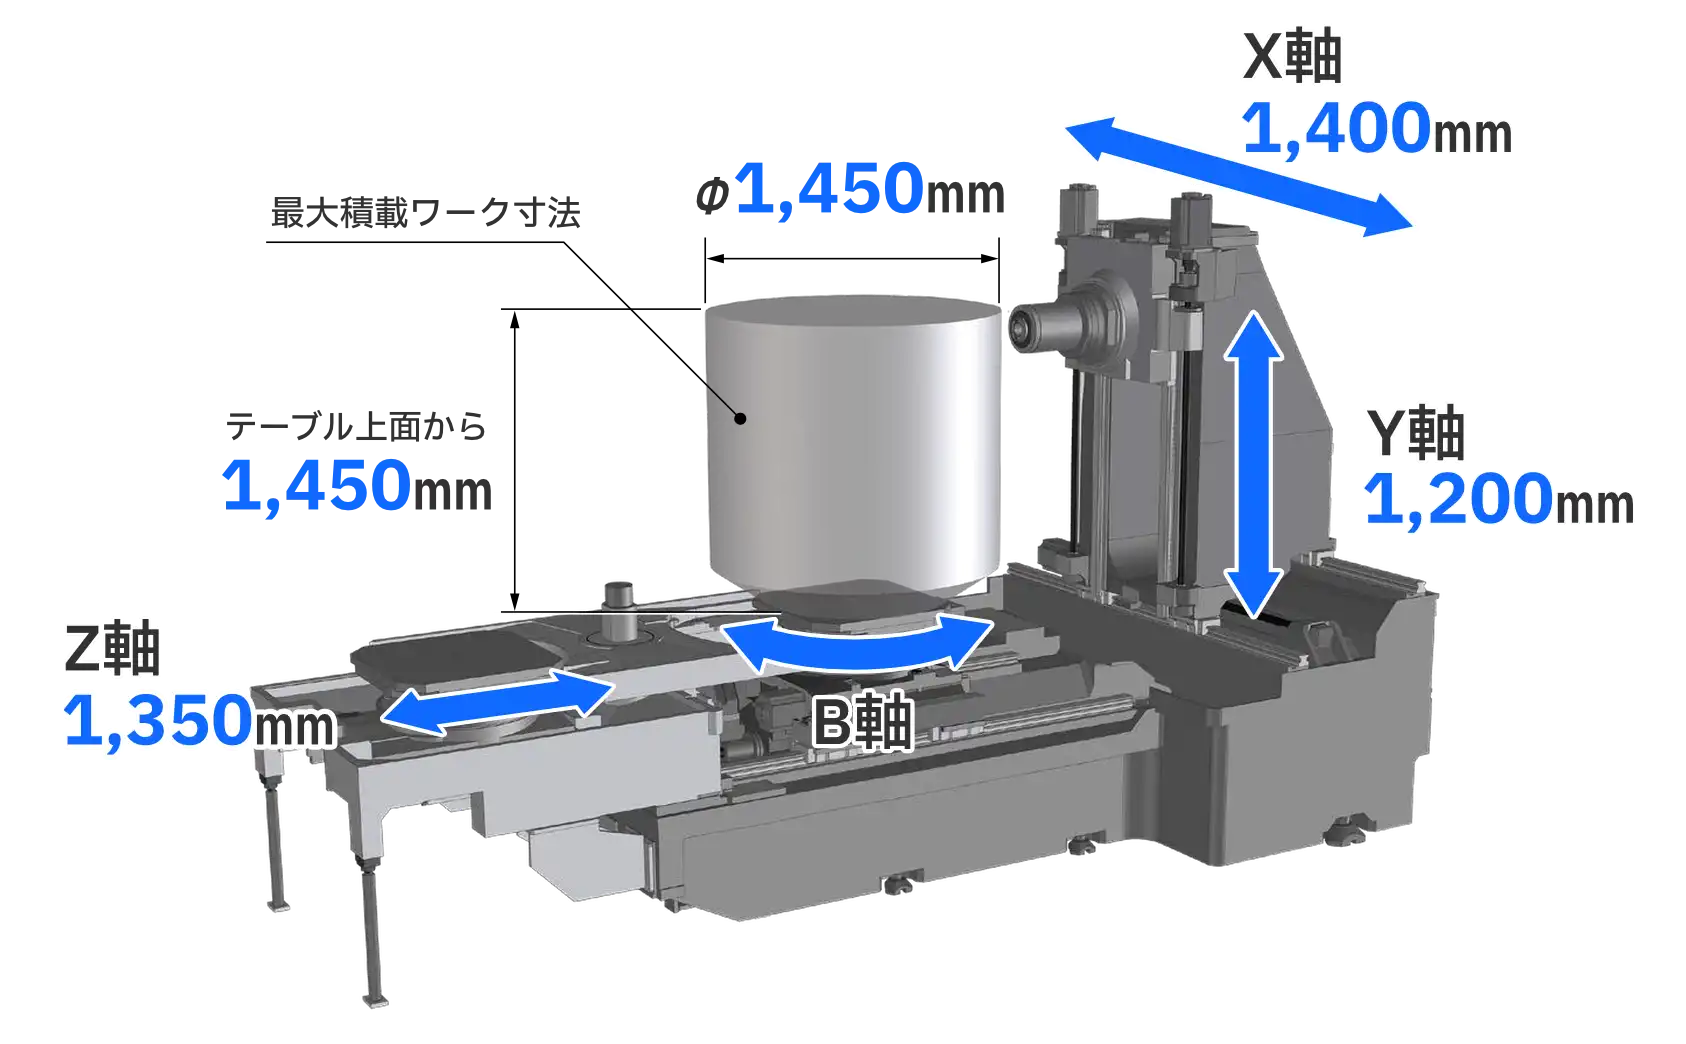 横形マシニングセンタMA-8000Hの最大積載ワーク寸法はΦ1450mmです。